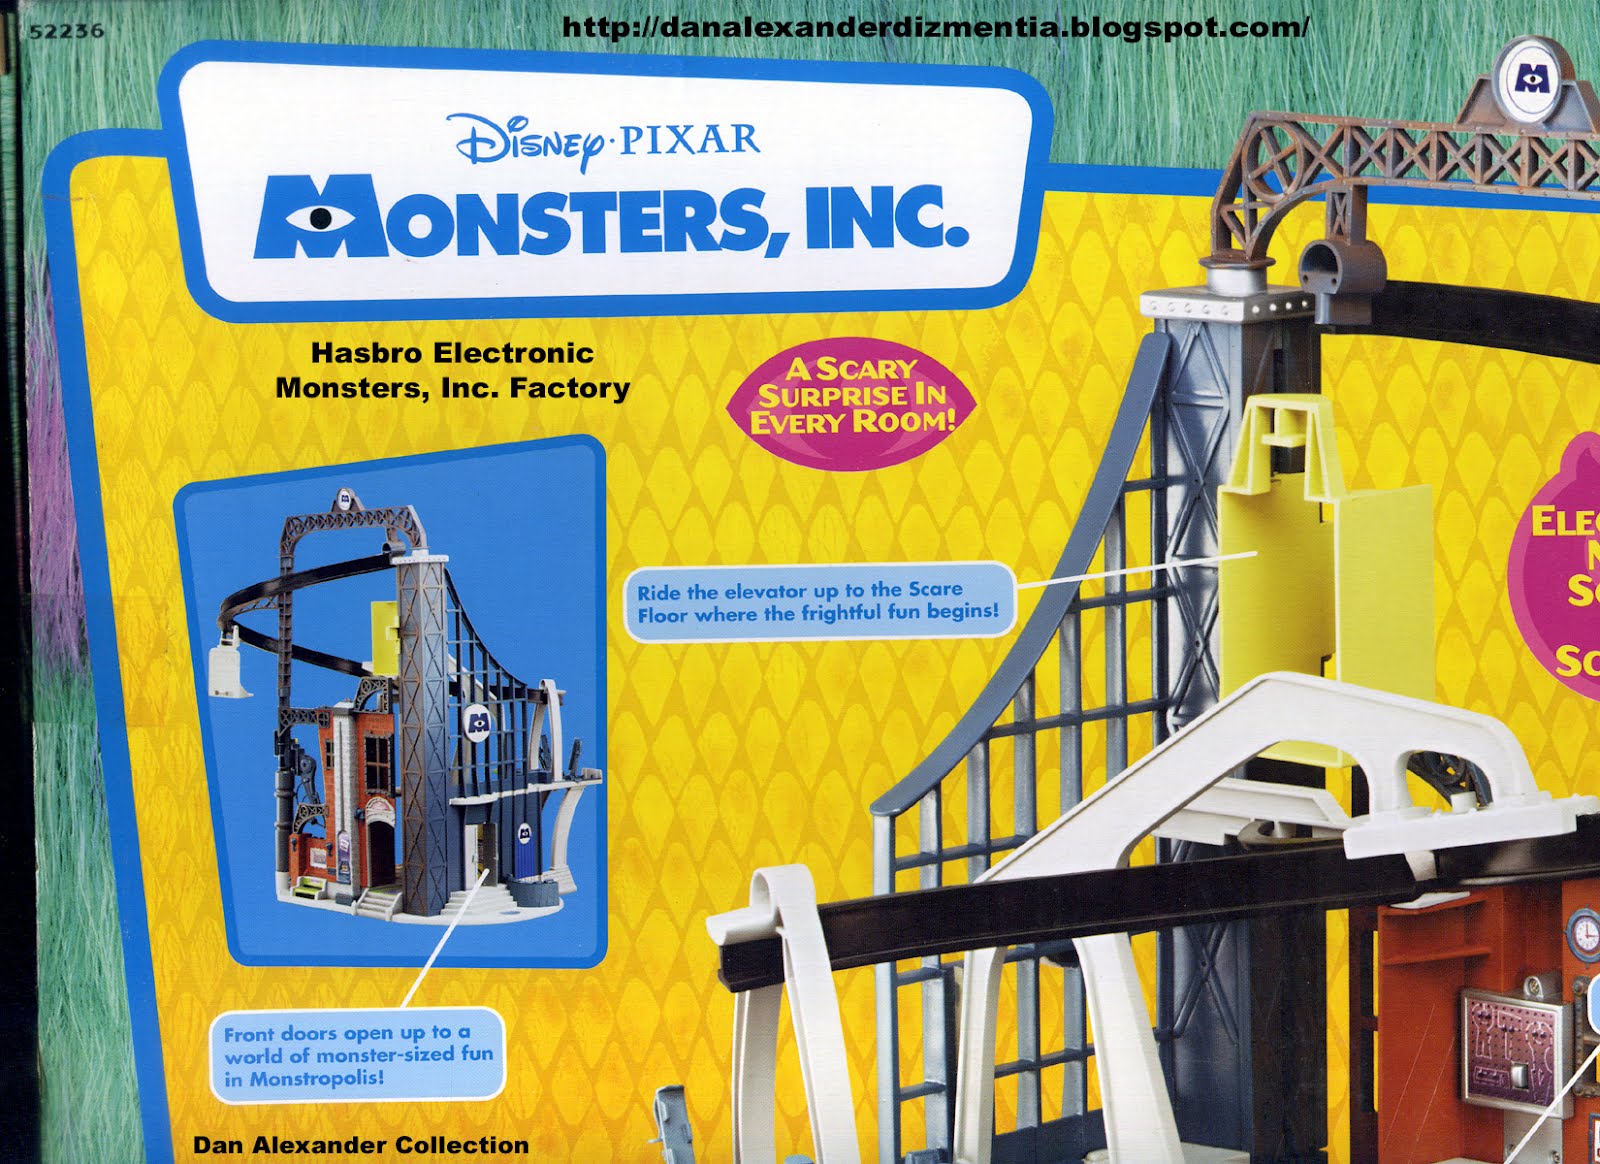 Pixar — “Monsters, Inc.” concept art of the Door Vault